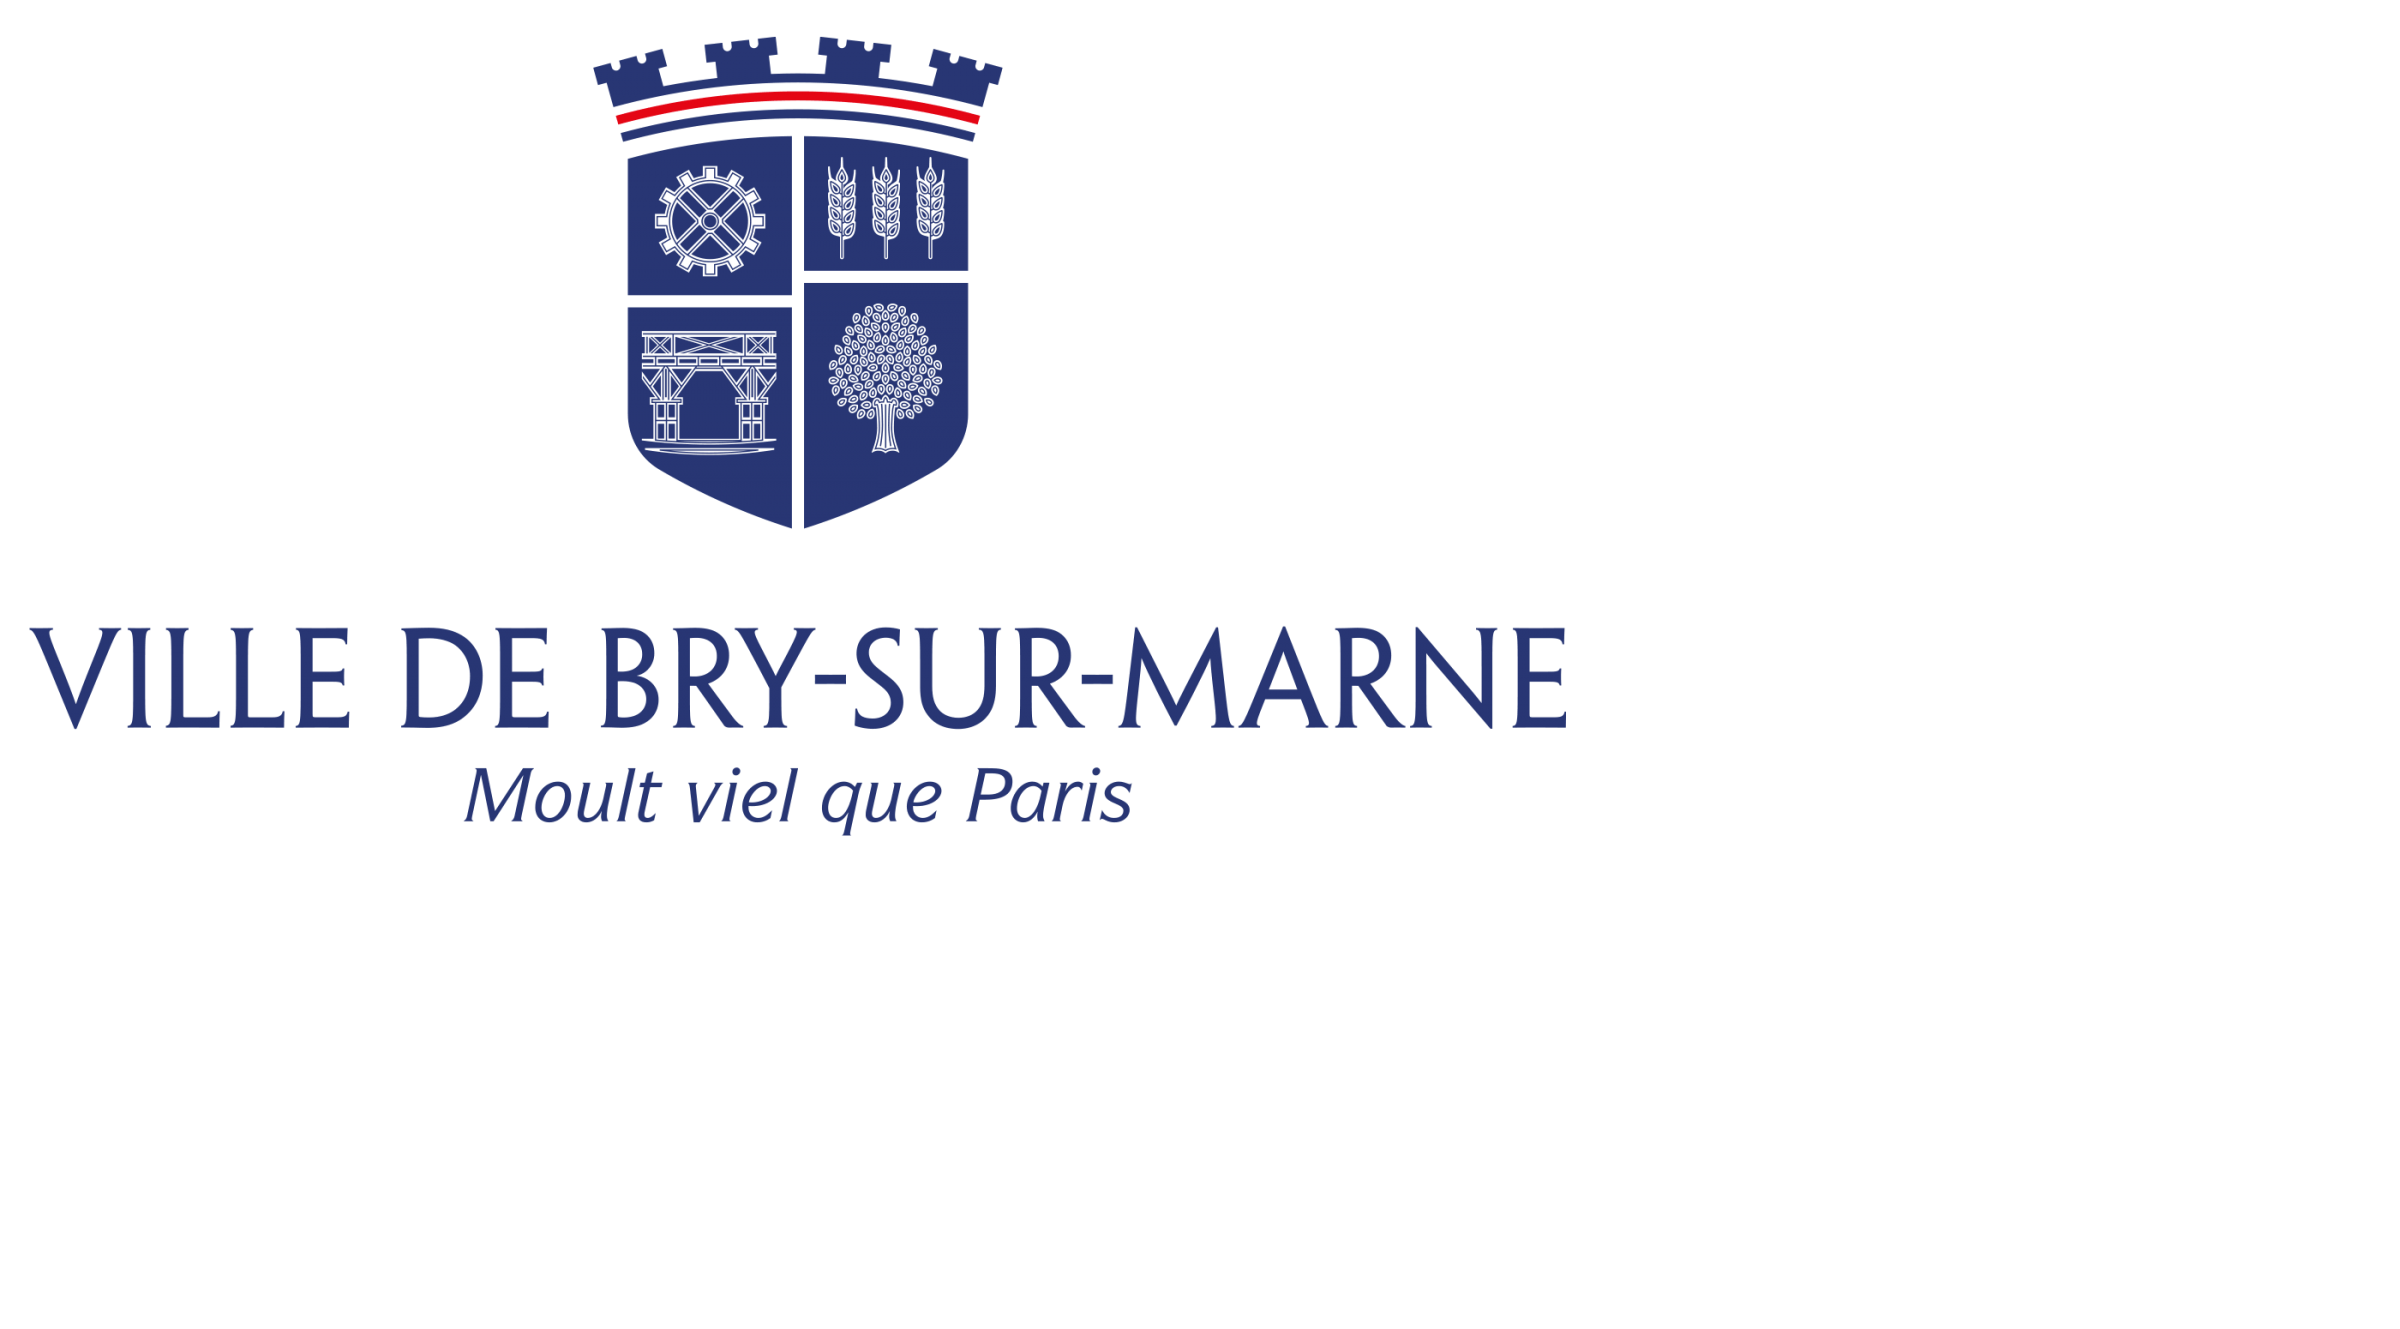 Ville de Bry-sur-Marne